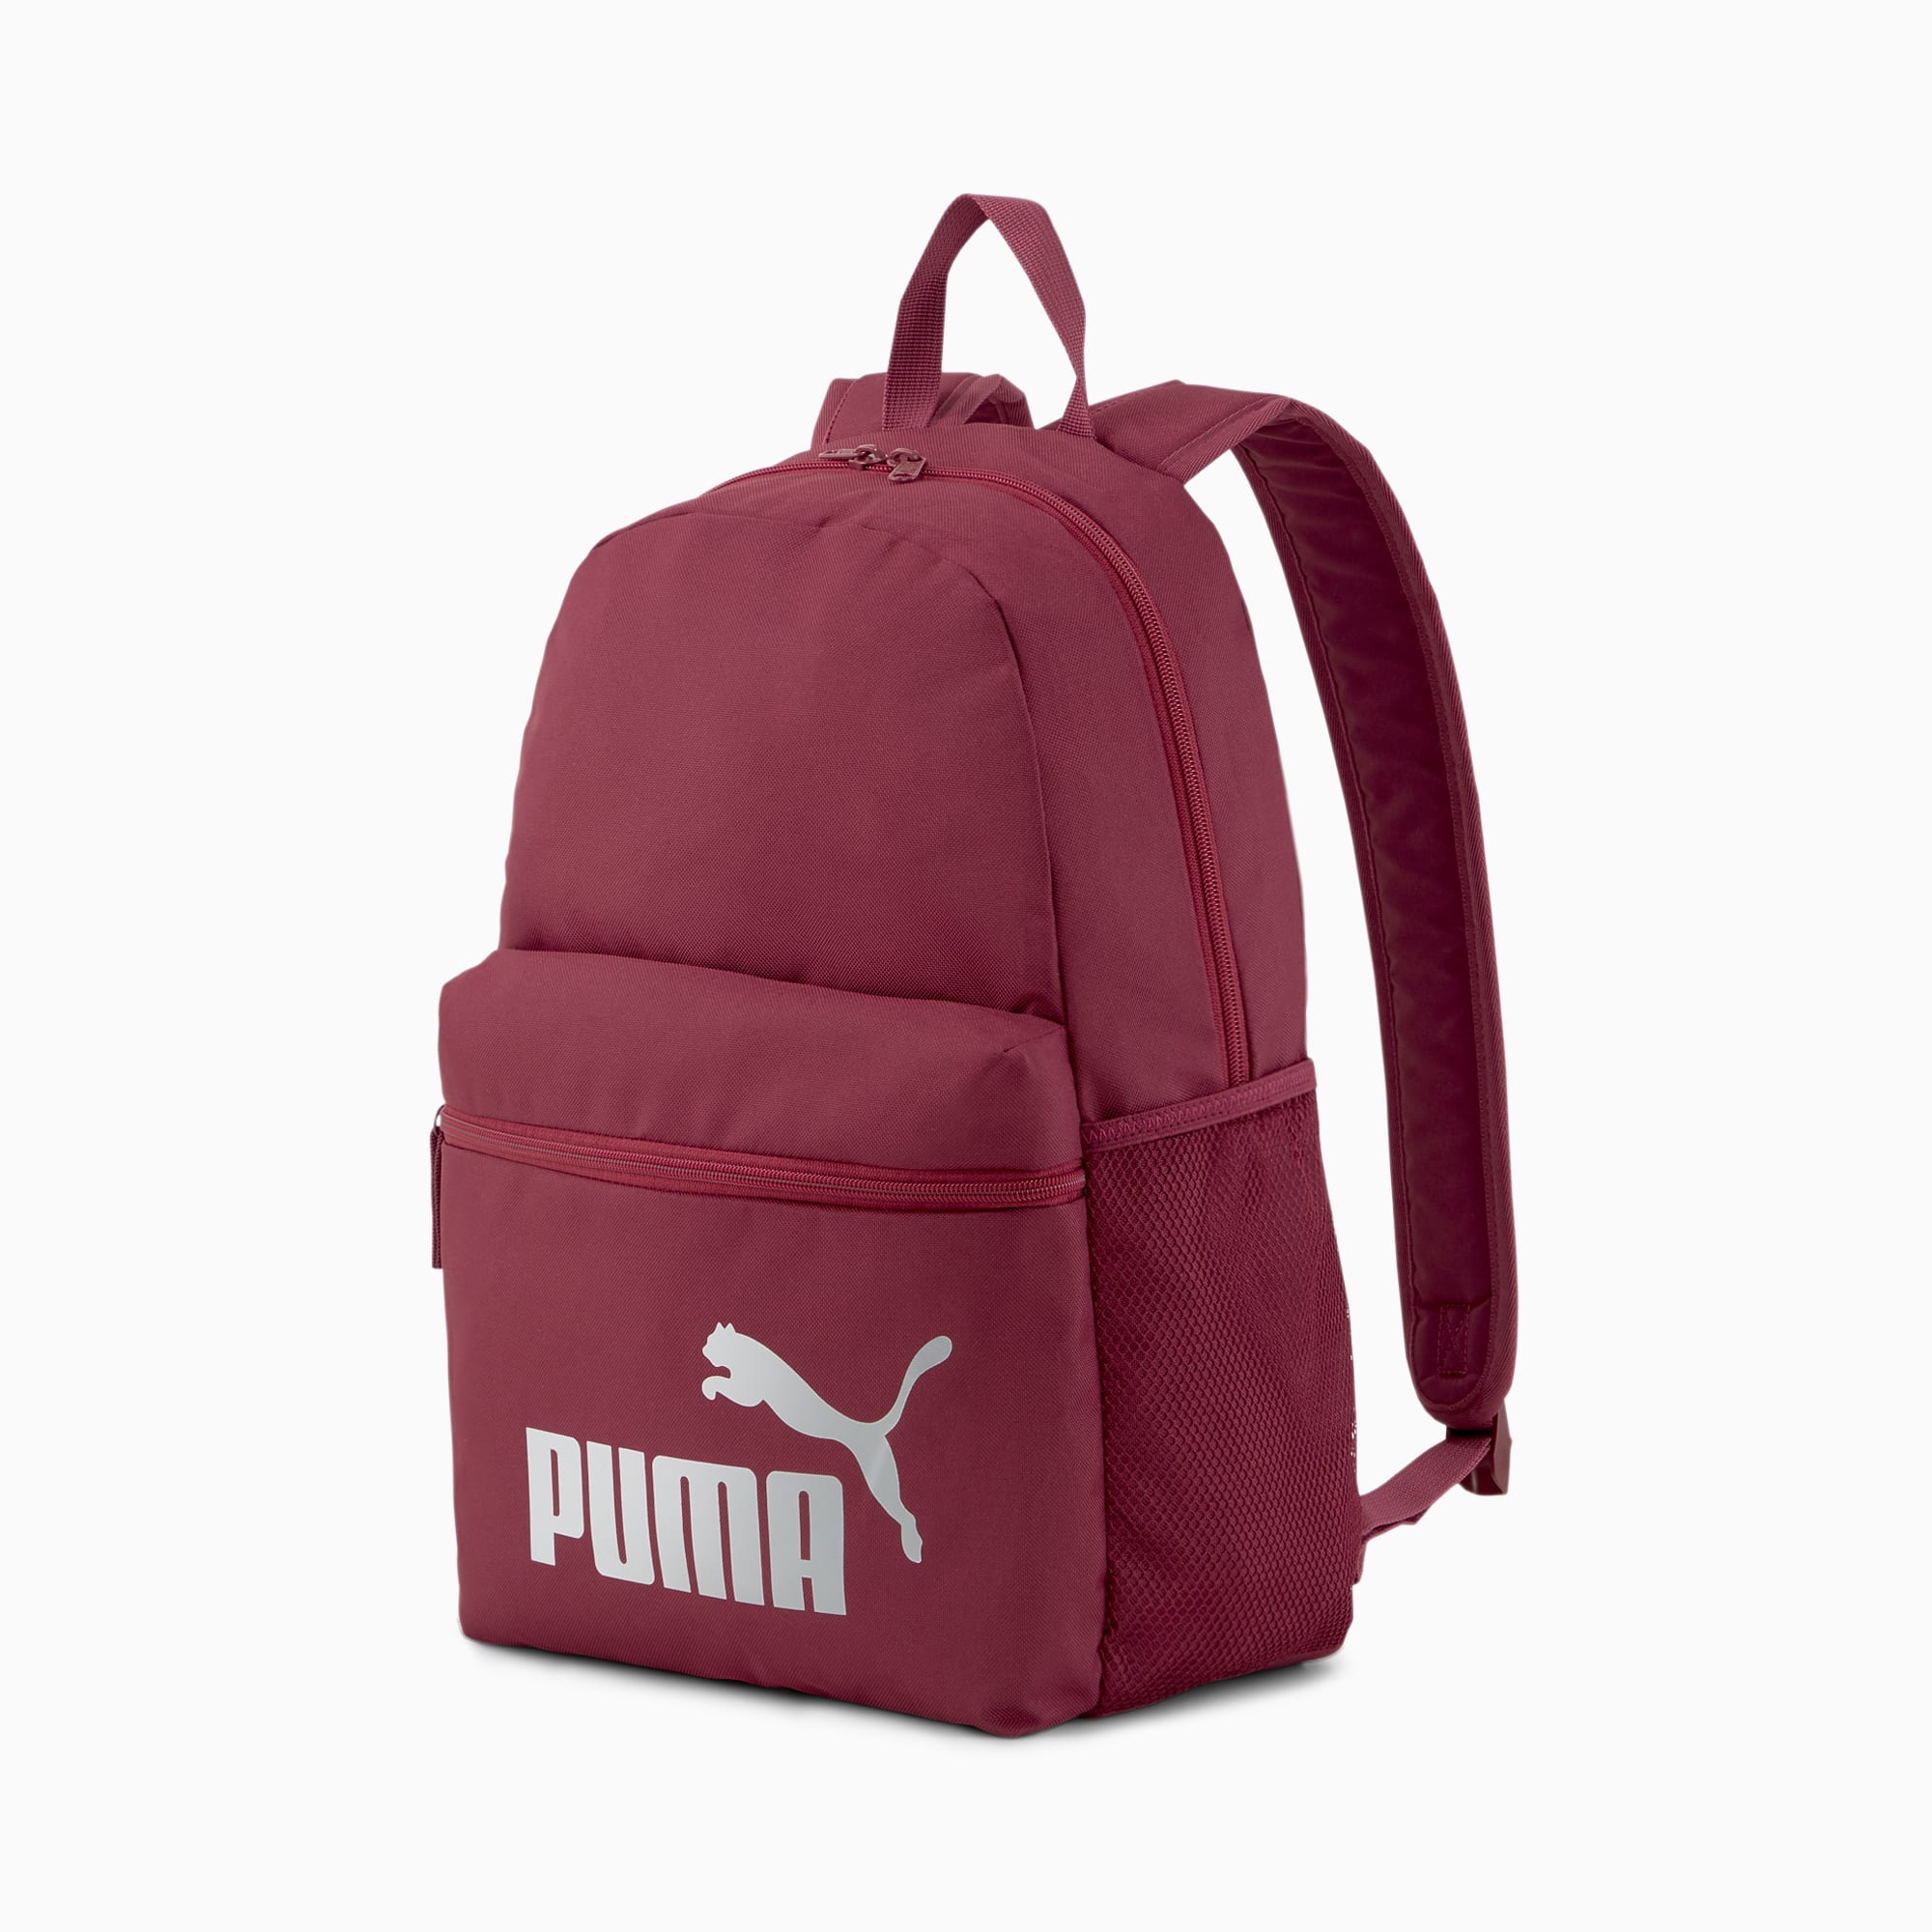 puma backpack silver